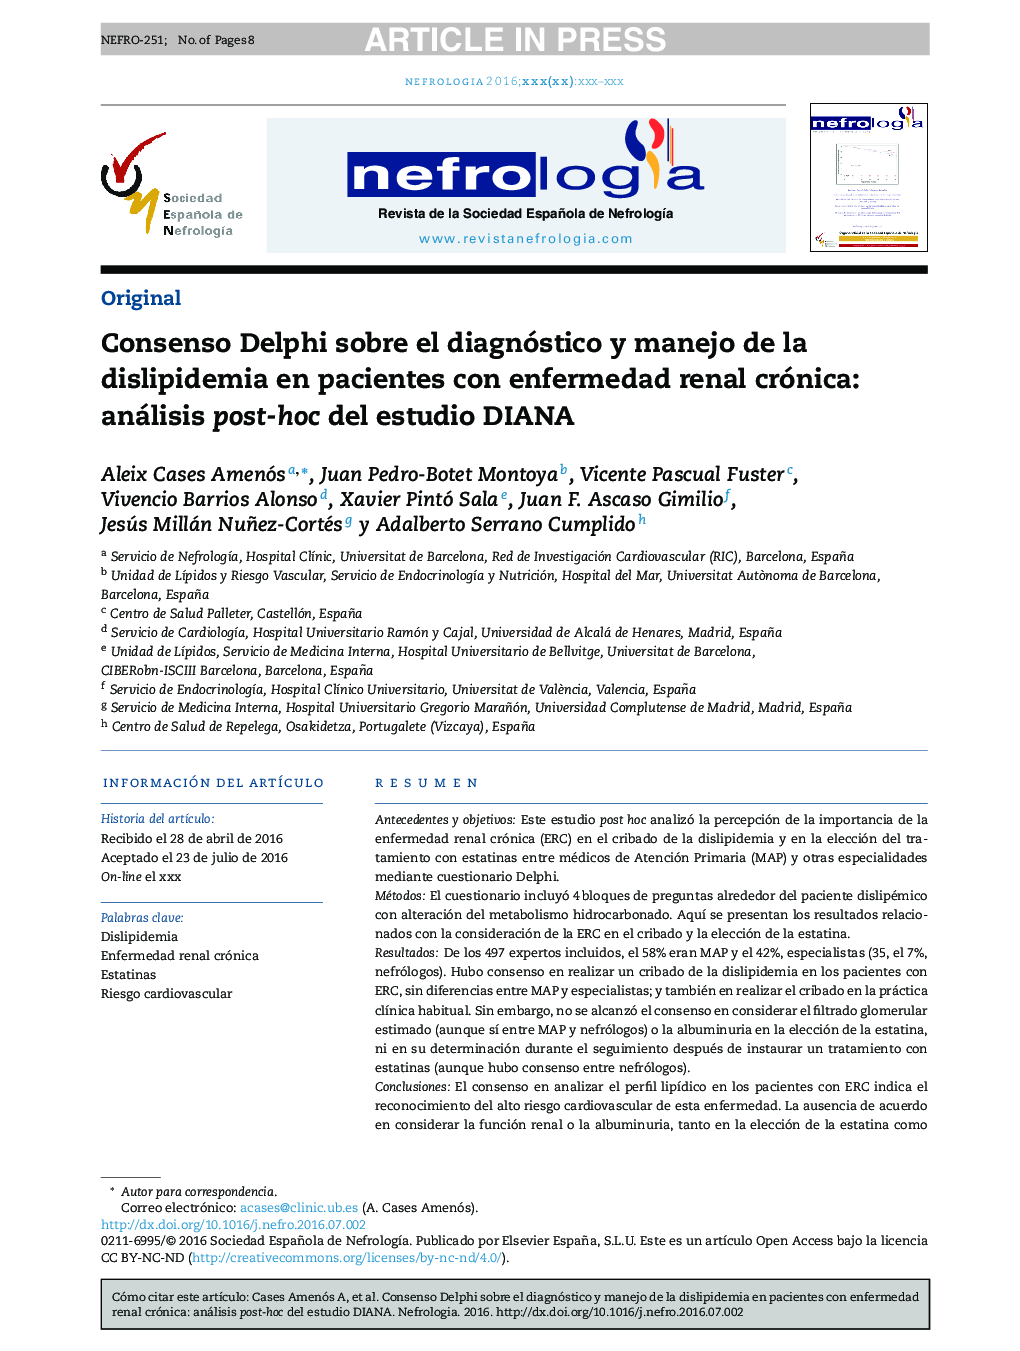 Consenso Delphi sobre el diagnóstico y manejo de la dislipidemia en pacientes con enfermedad renal crónica: análisis post-hoc del estudio DIANA